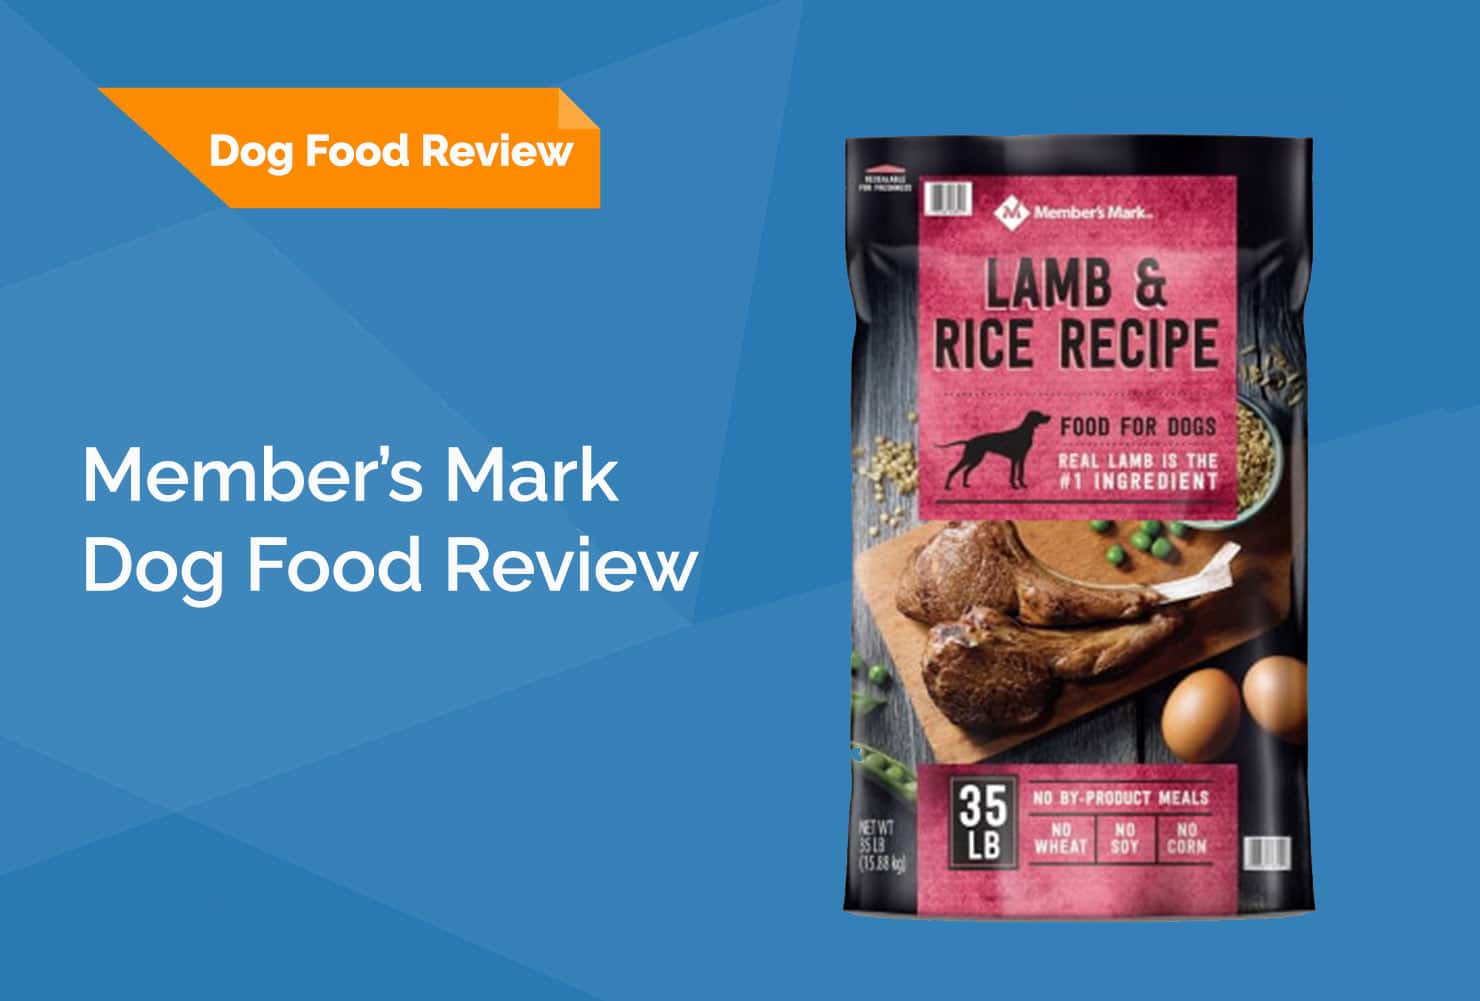 Members Mark dog food review